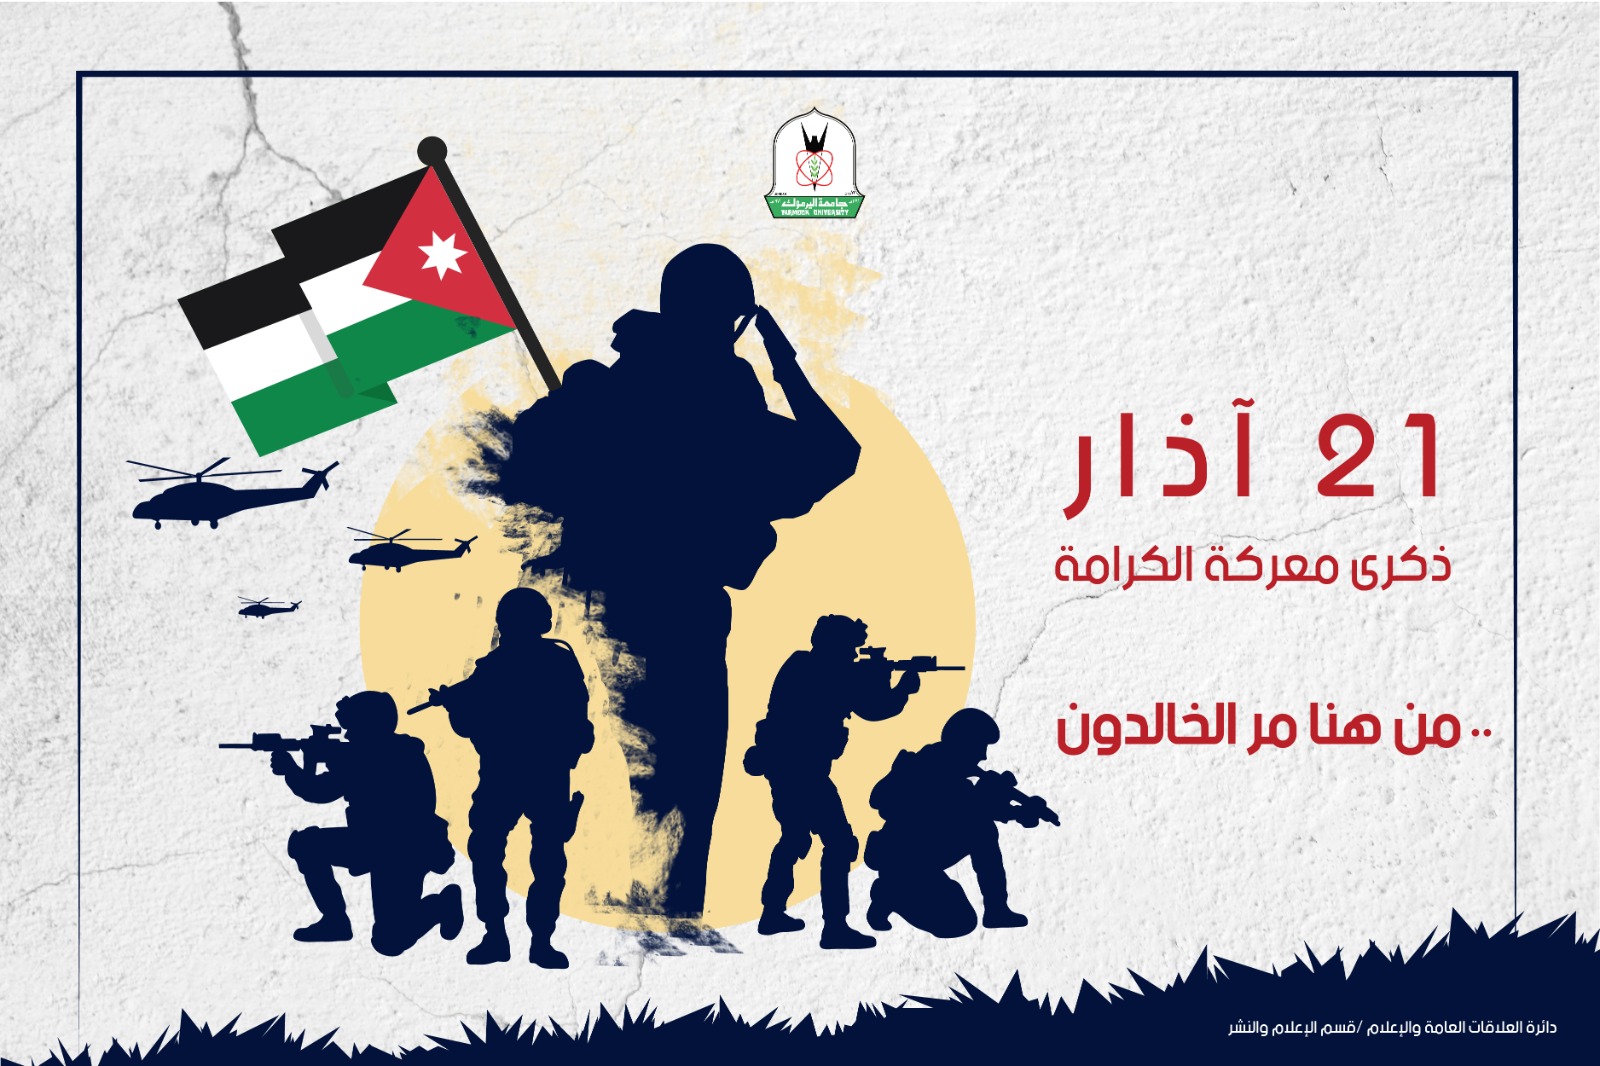 "اليرموك" تستذكر معركة الكرامة بوصفها يوما أردنيا وعربيا خالدا بالتضحية والفداء